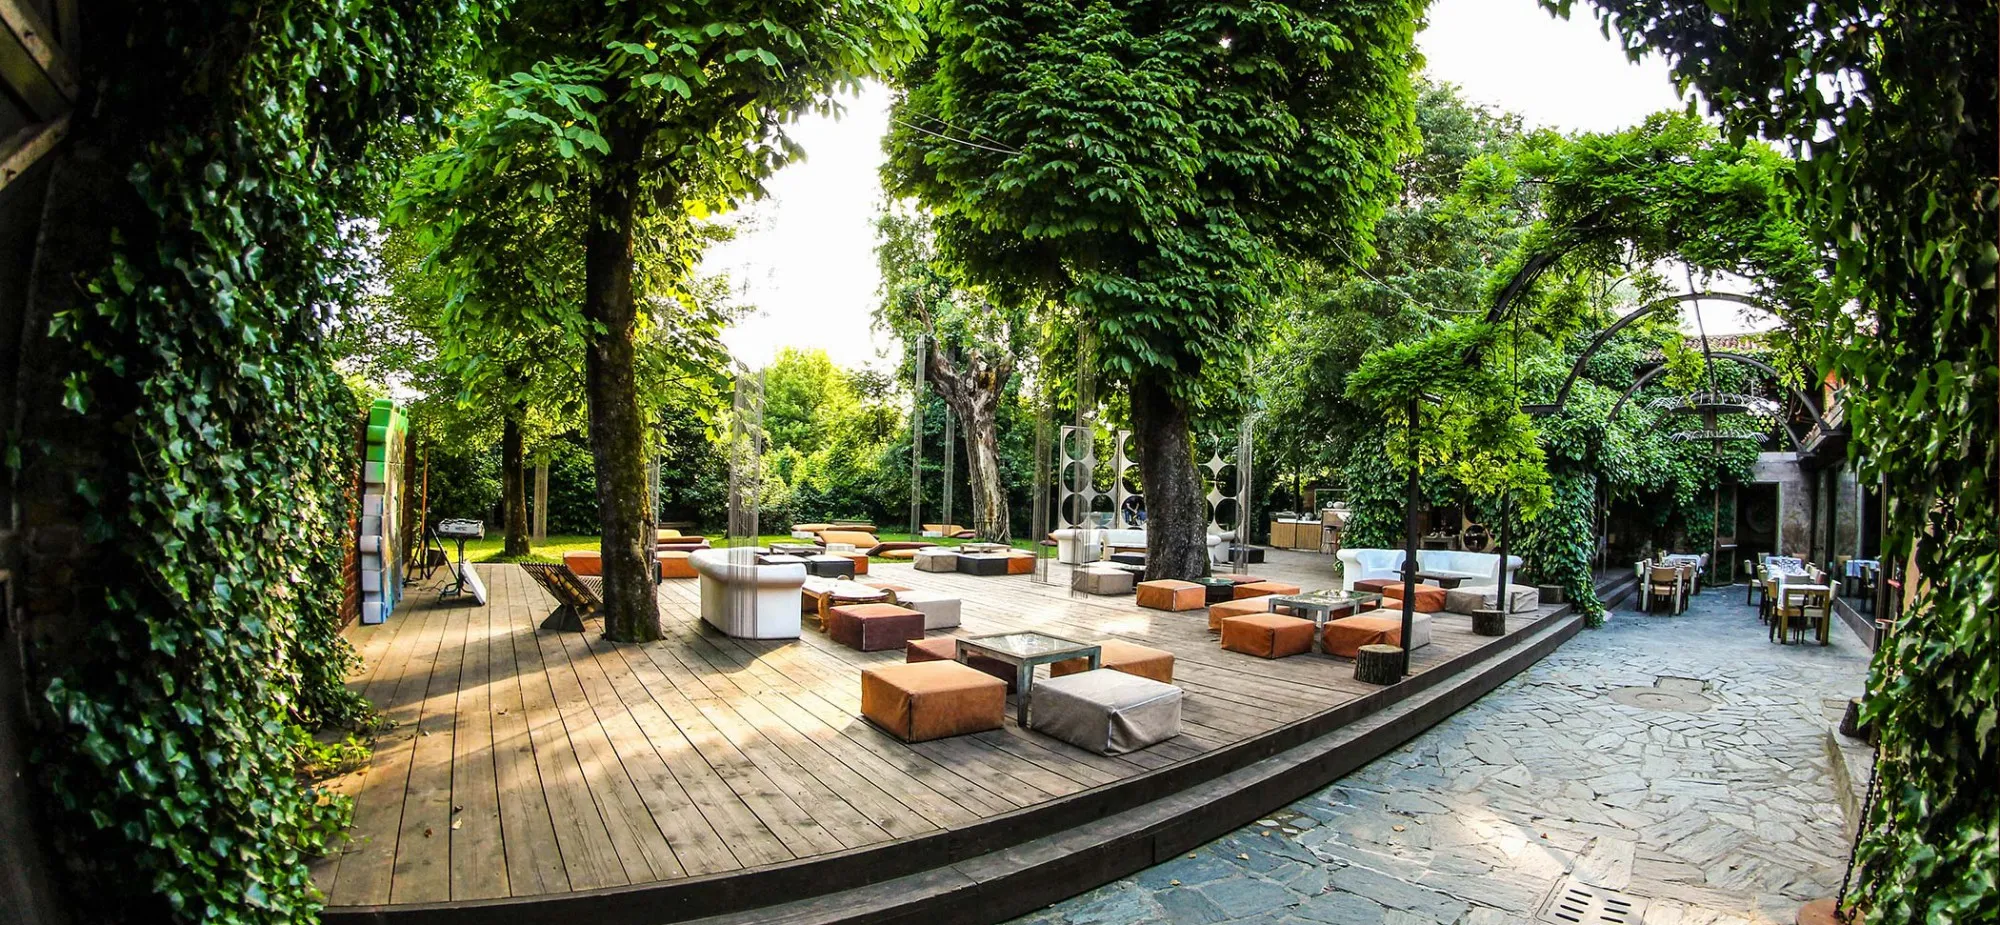 Il "4cento", tra i migliori ristoranti all'aperto con giardino di Milano